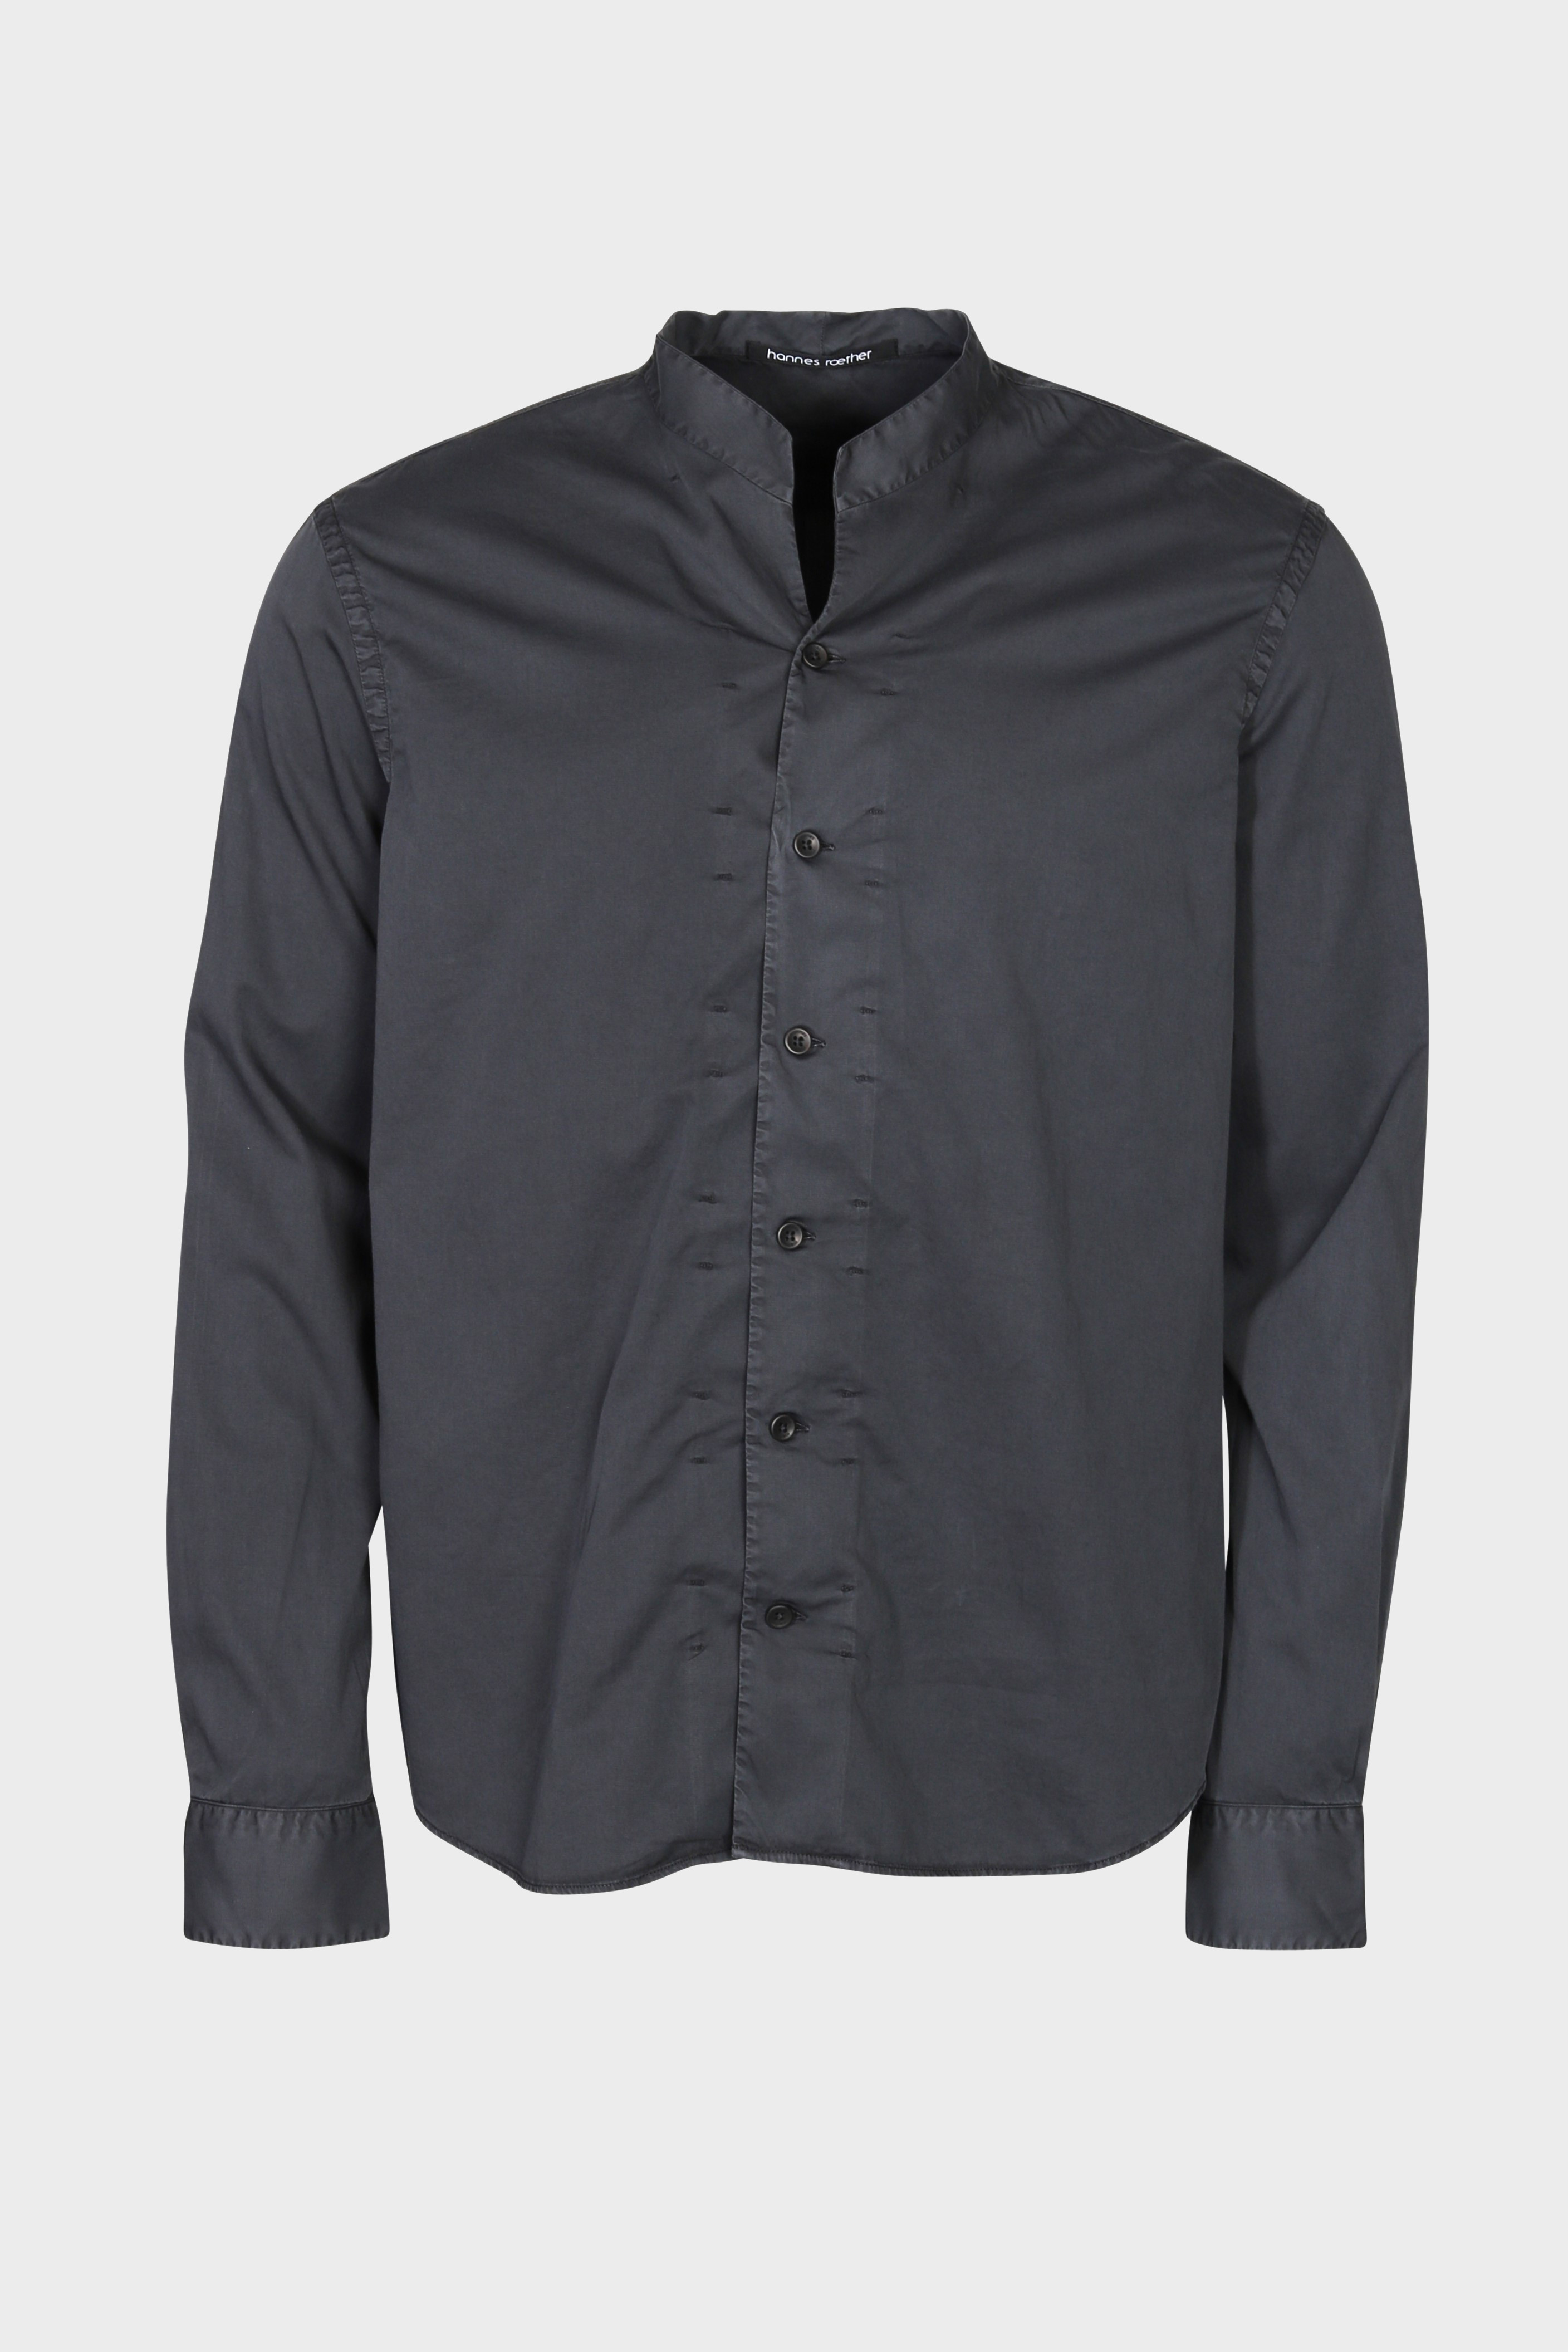 HANNES ROETHER Cotton Shirt in Dark Grey